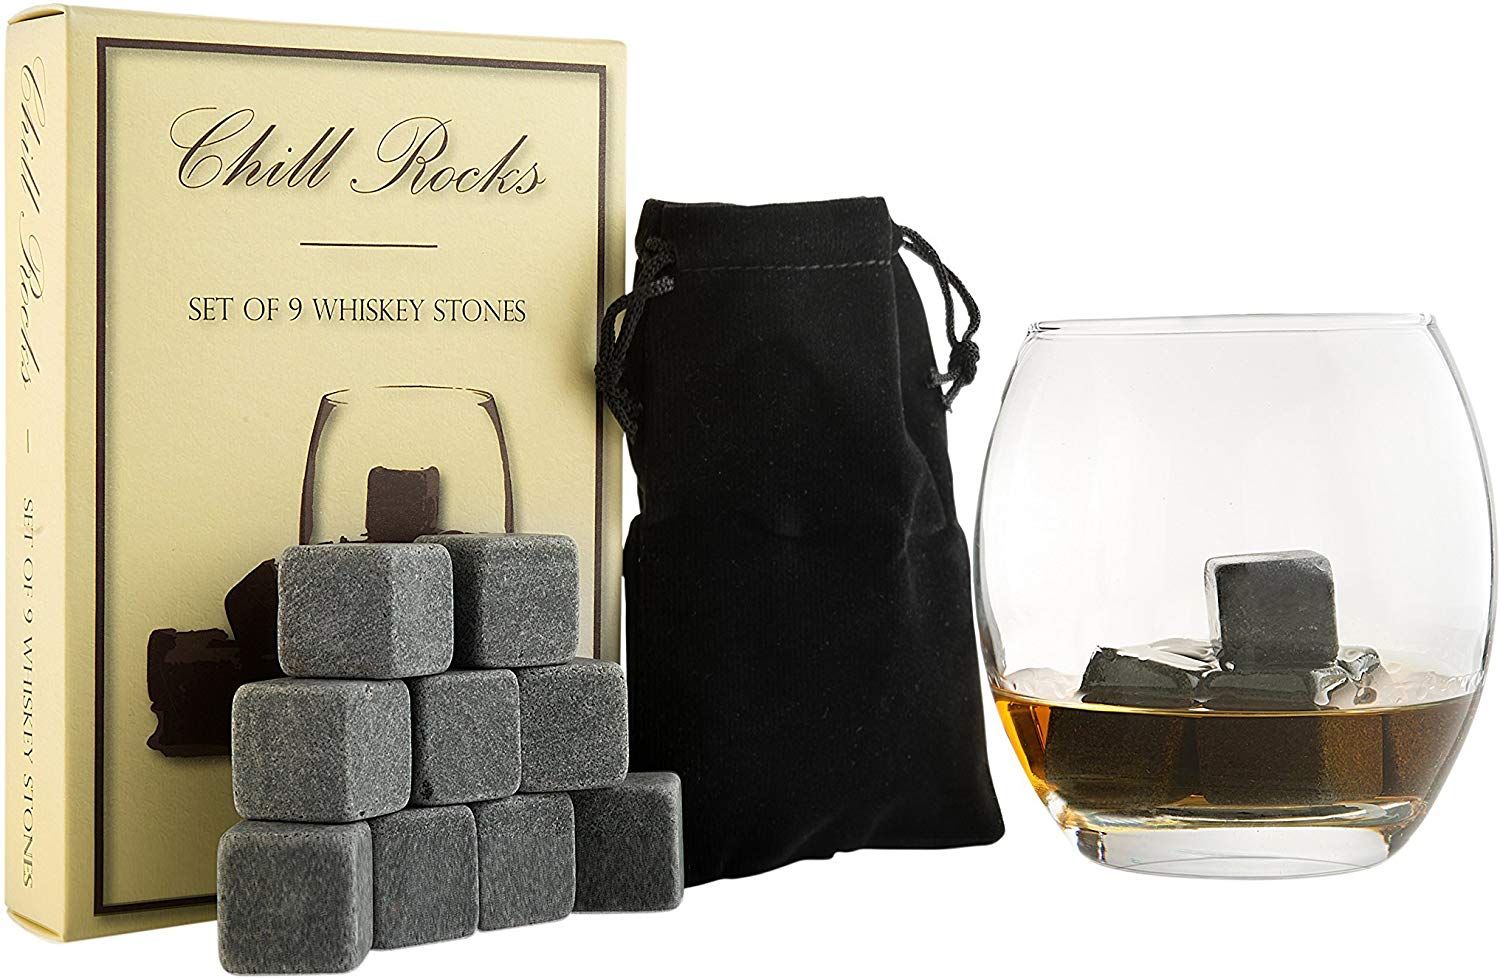 Best Whiskey Gifts 2022: Whiskey Stone Gift Set 2022